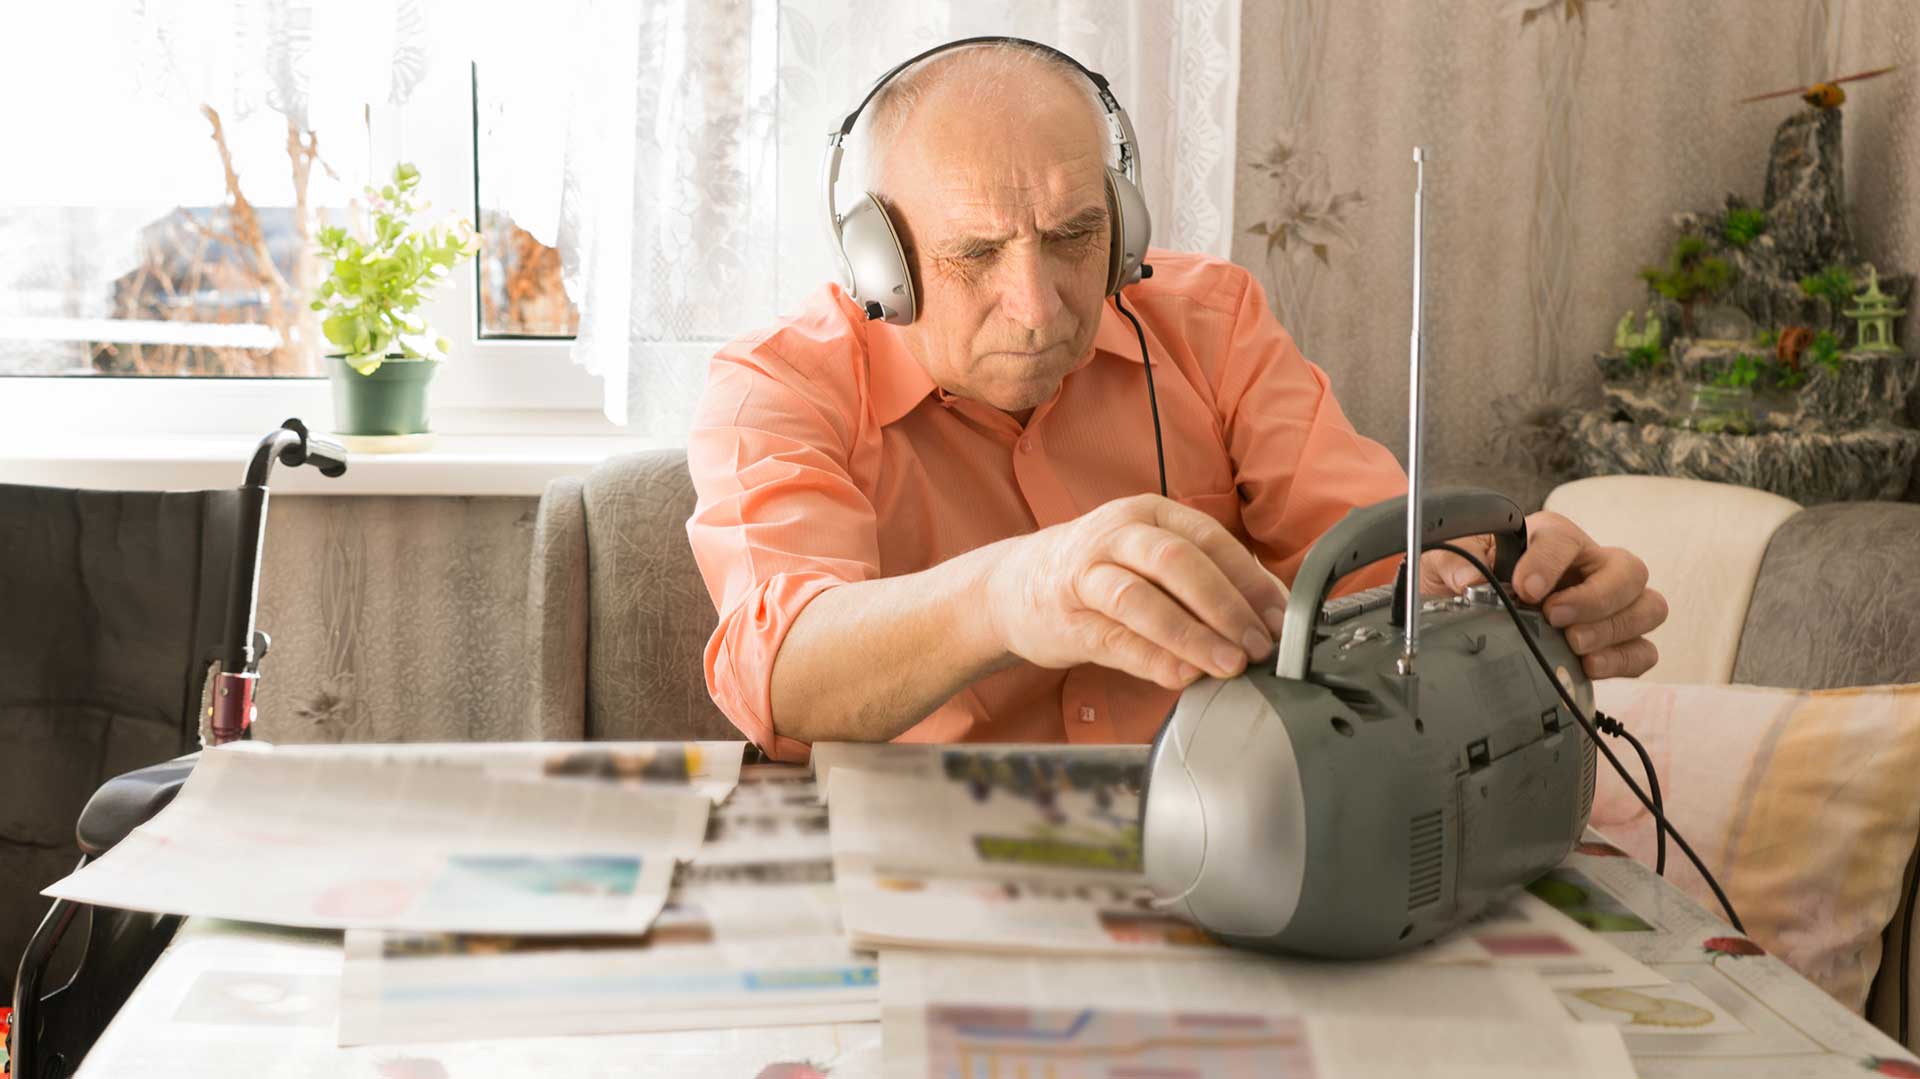 Видео радиостанцию. Слушать радио. Пожилые люди в наушниках. Дедушка радио. Дед с радио.